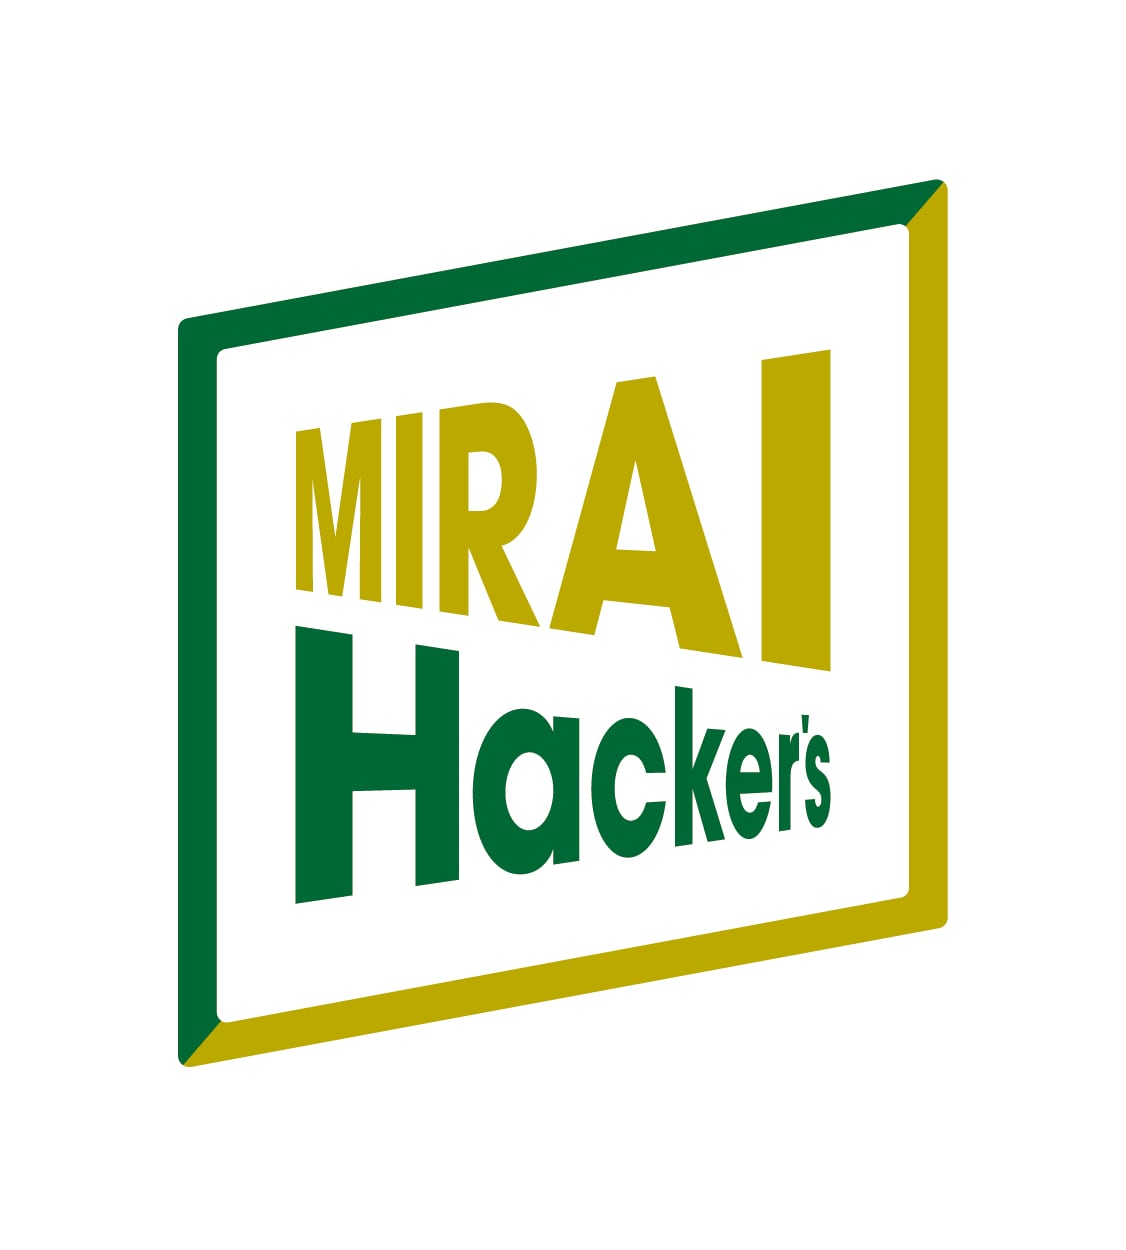 Mirai Hackers Factory